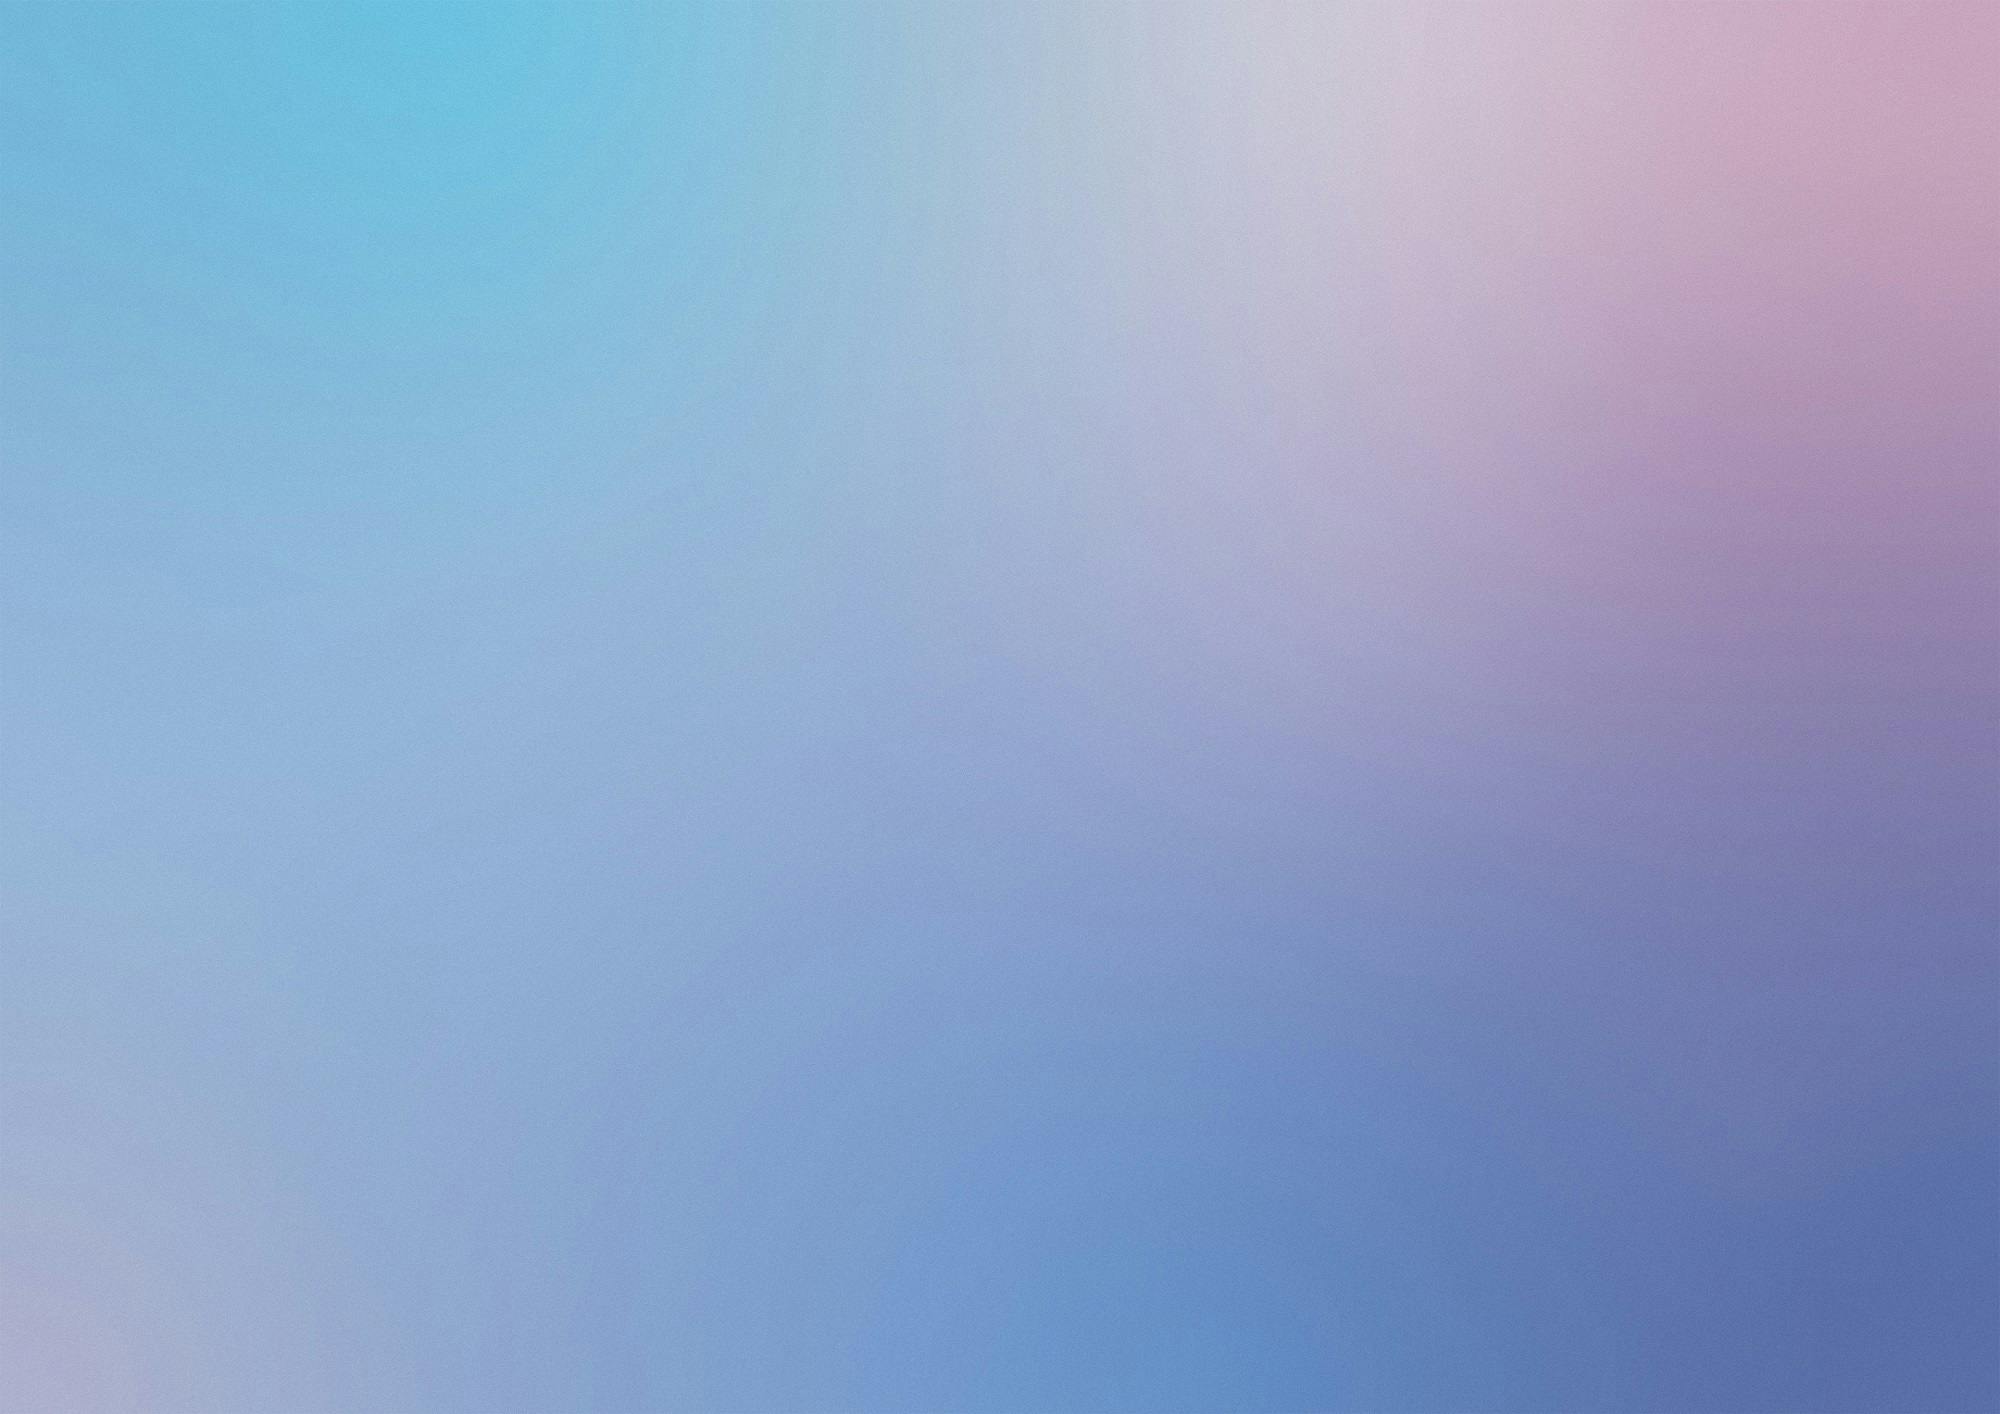 Farbverlaufshintergrund von Blau zu Rosa.